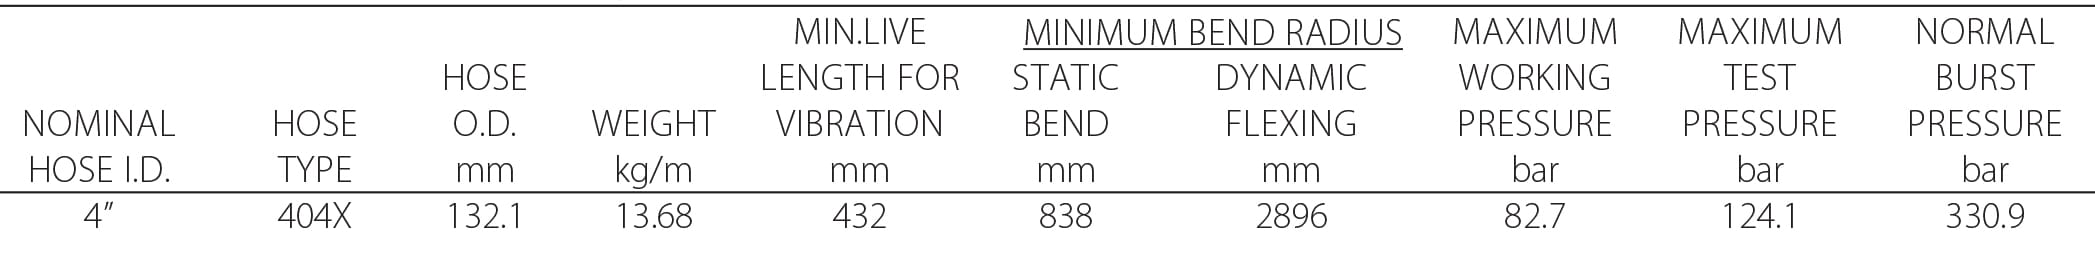 402X Series High Pressure Annular Hose 404X Tech Specs Metric